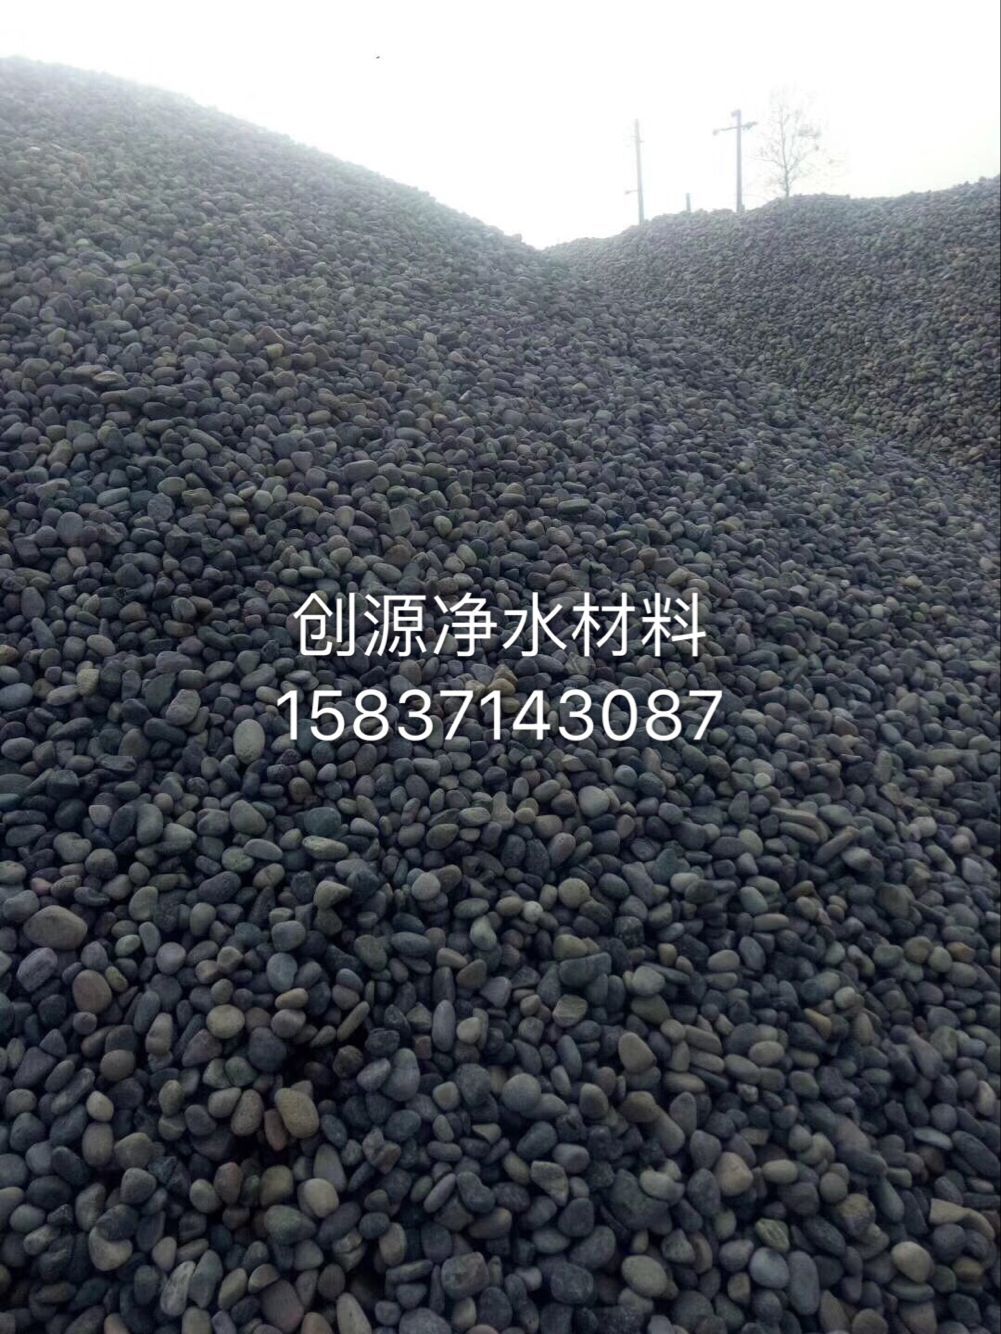 景观鹅卵石 彩色鹅卵石 鹅卵石 生产厂家在哪 景观鹅卵石的市场价是多少